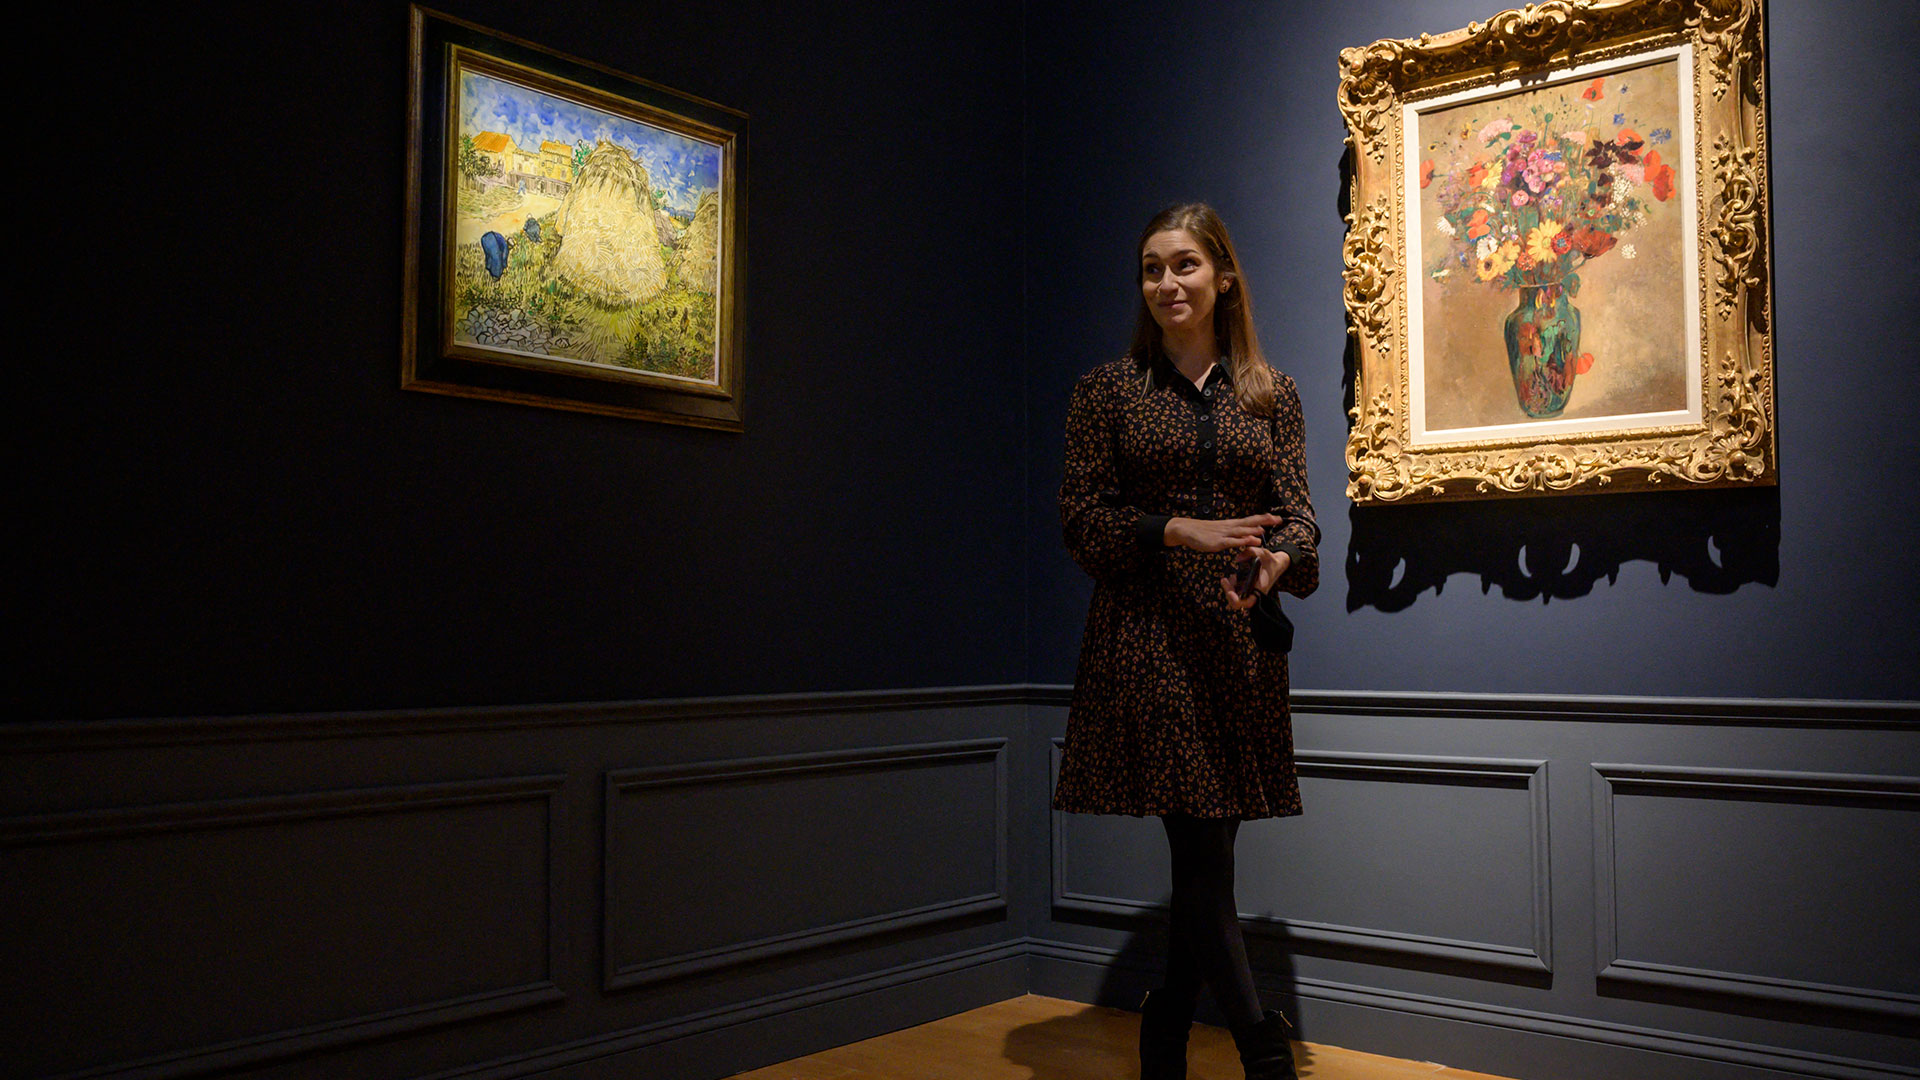 "Meules de blé", de Vincent van Gogh, sobre el lado izquierdo, y a su derecha un cuadro Gustave Caillebotte adquirido por el Getty Museum (Ed JONES / AFP)